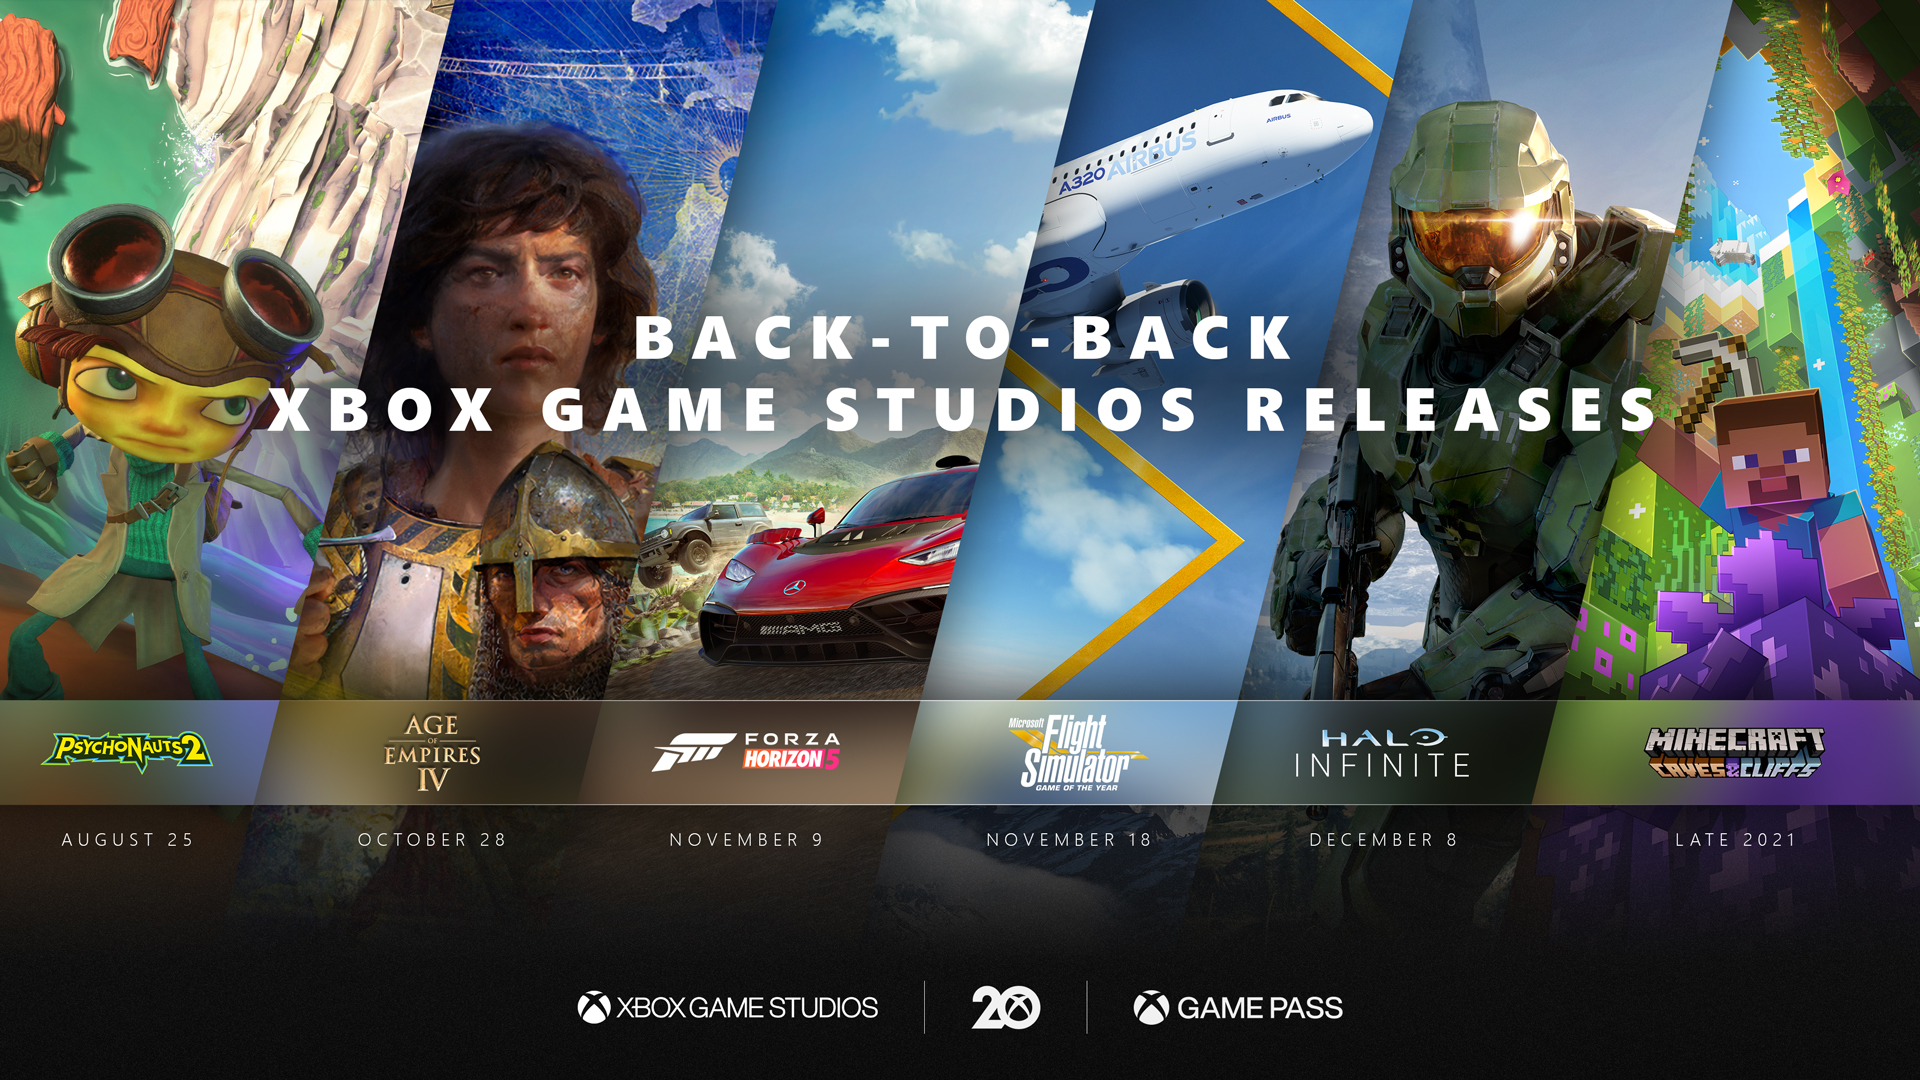 Xbox Game Pass para Amigos e Família pode estar sendo lançado em breve